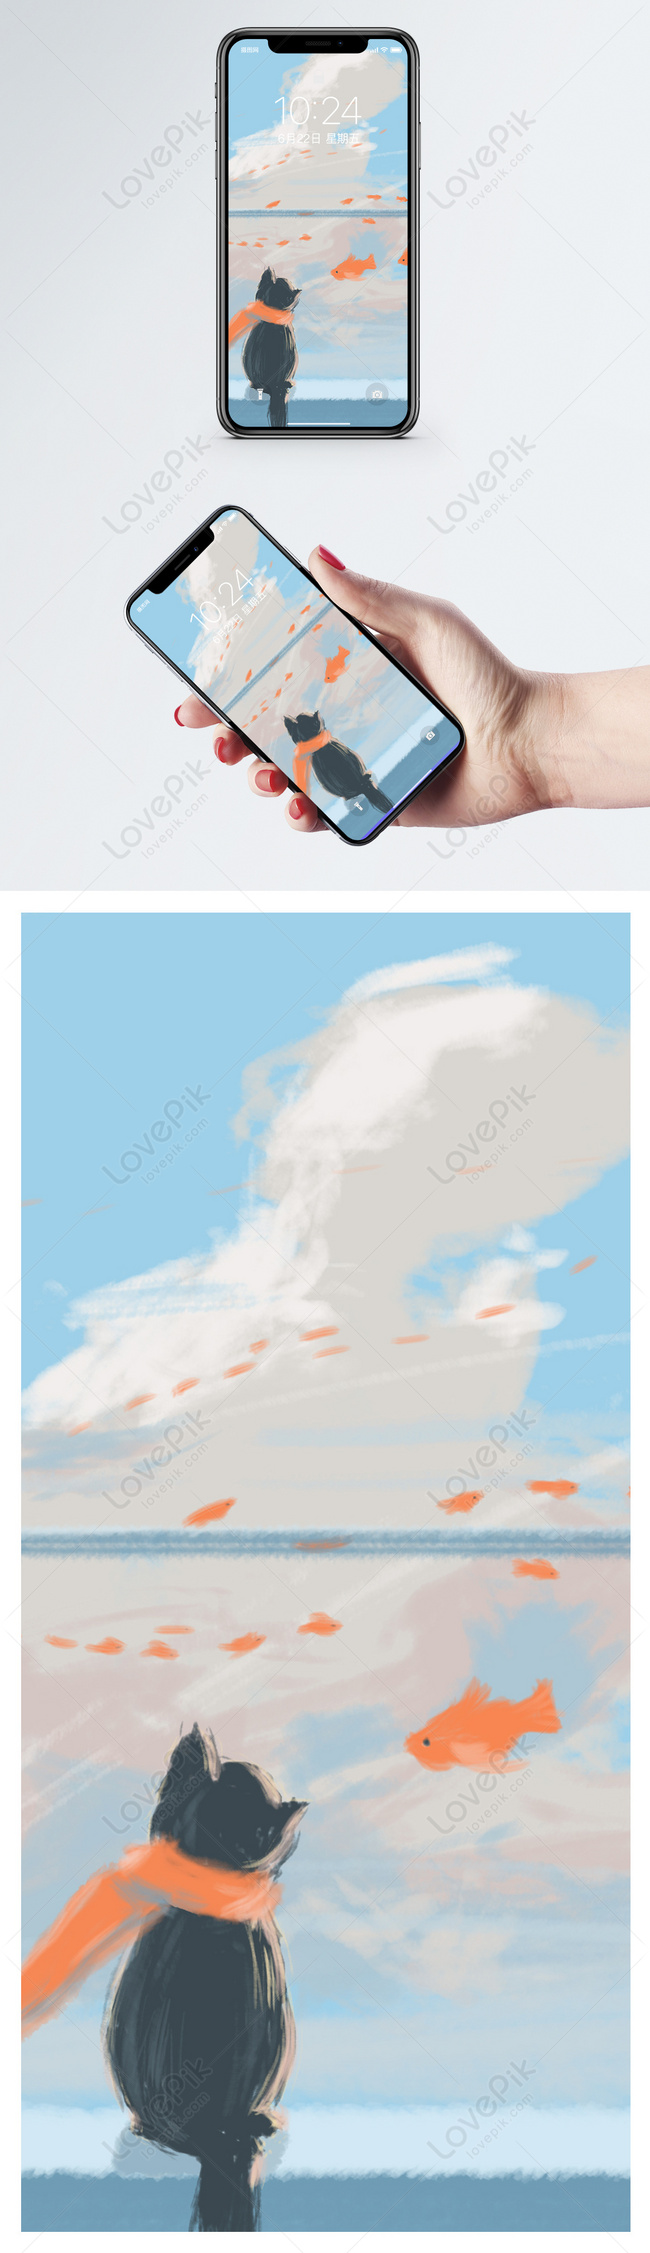 7300+ Vẽ Tay Tàu Hỏa Hoạt Hình HD hình nền Iphone tải xuống - vn.lovepik.com